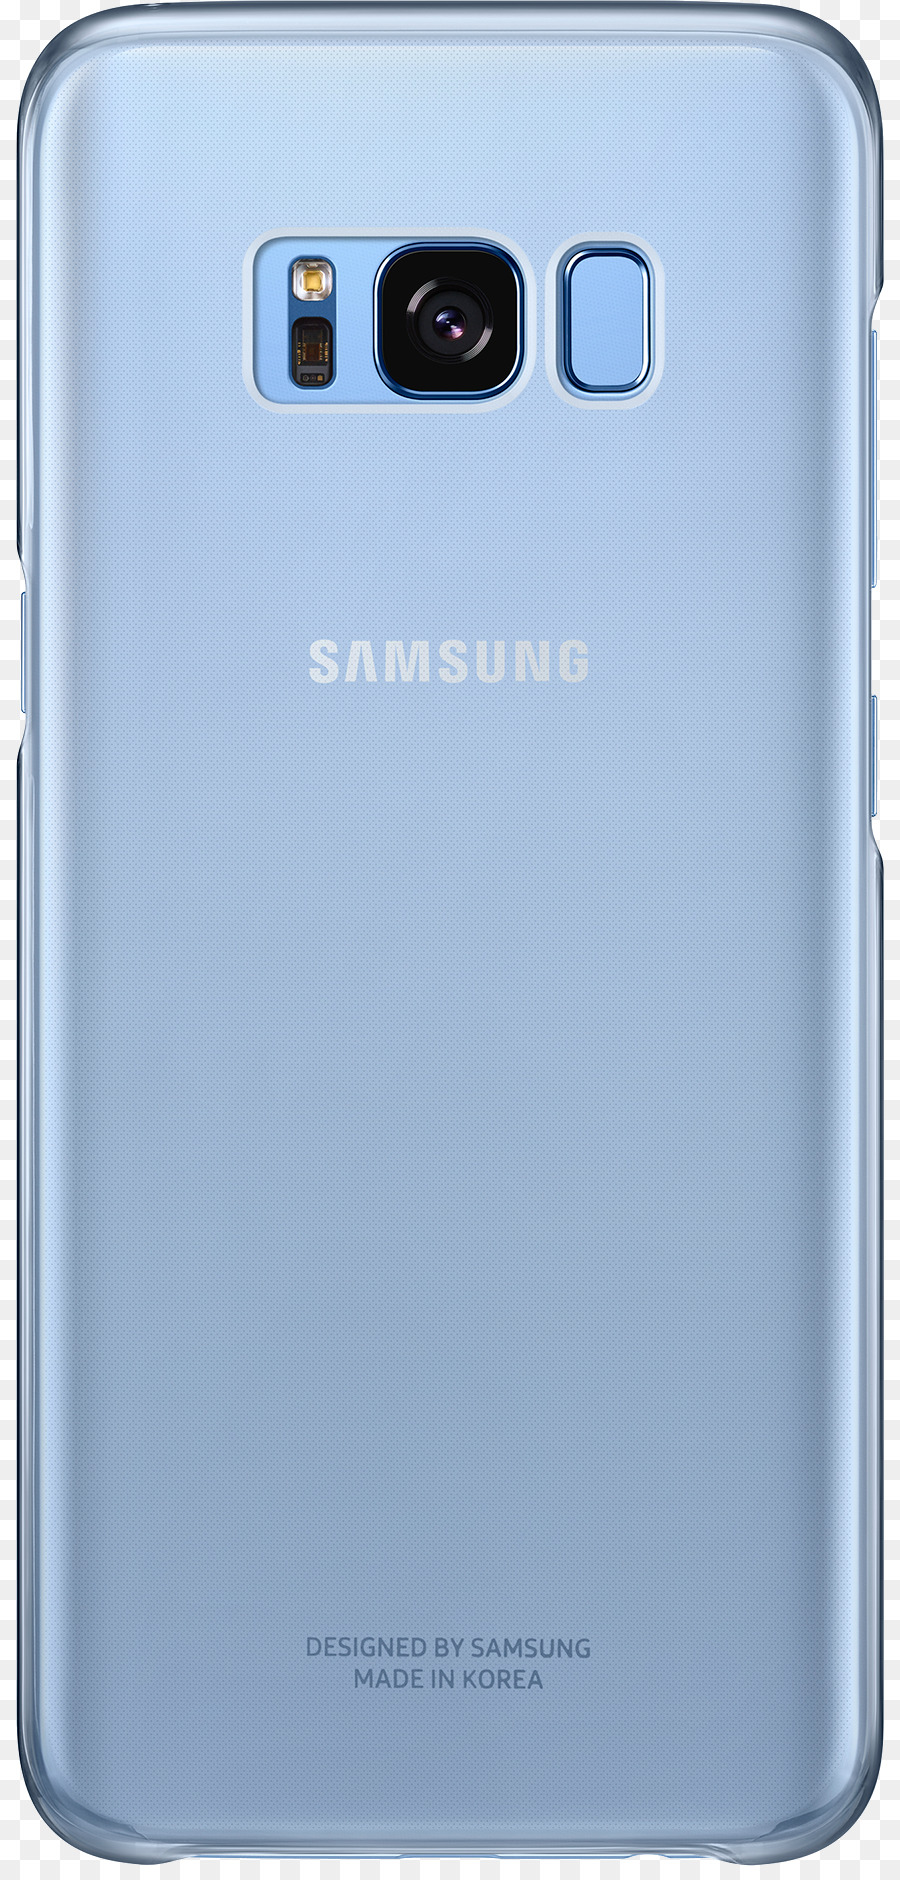 Samsung S7 điện Thoại Thông minh màu xanh - samsung